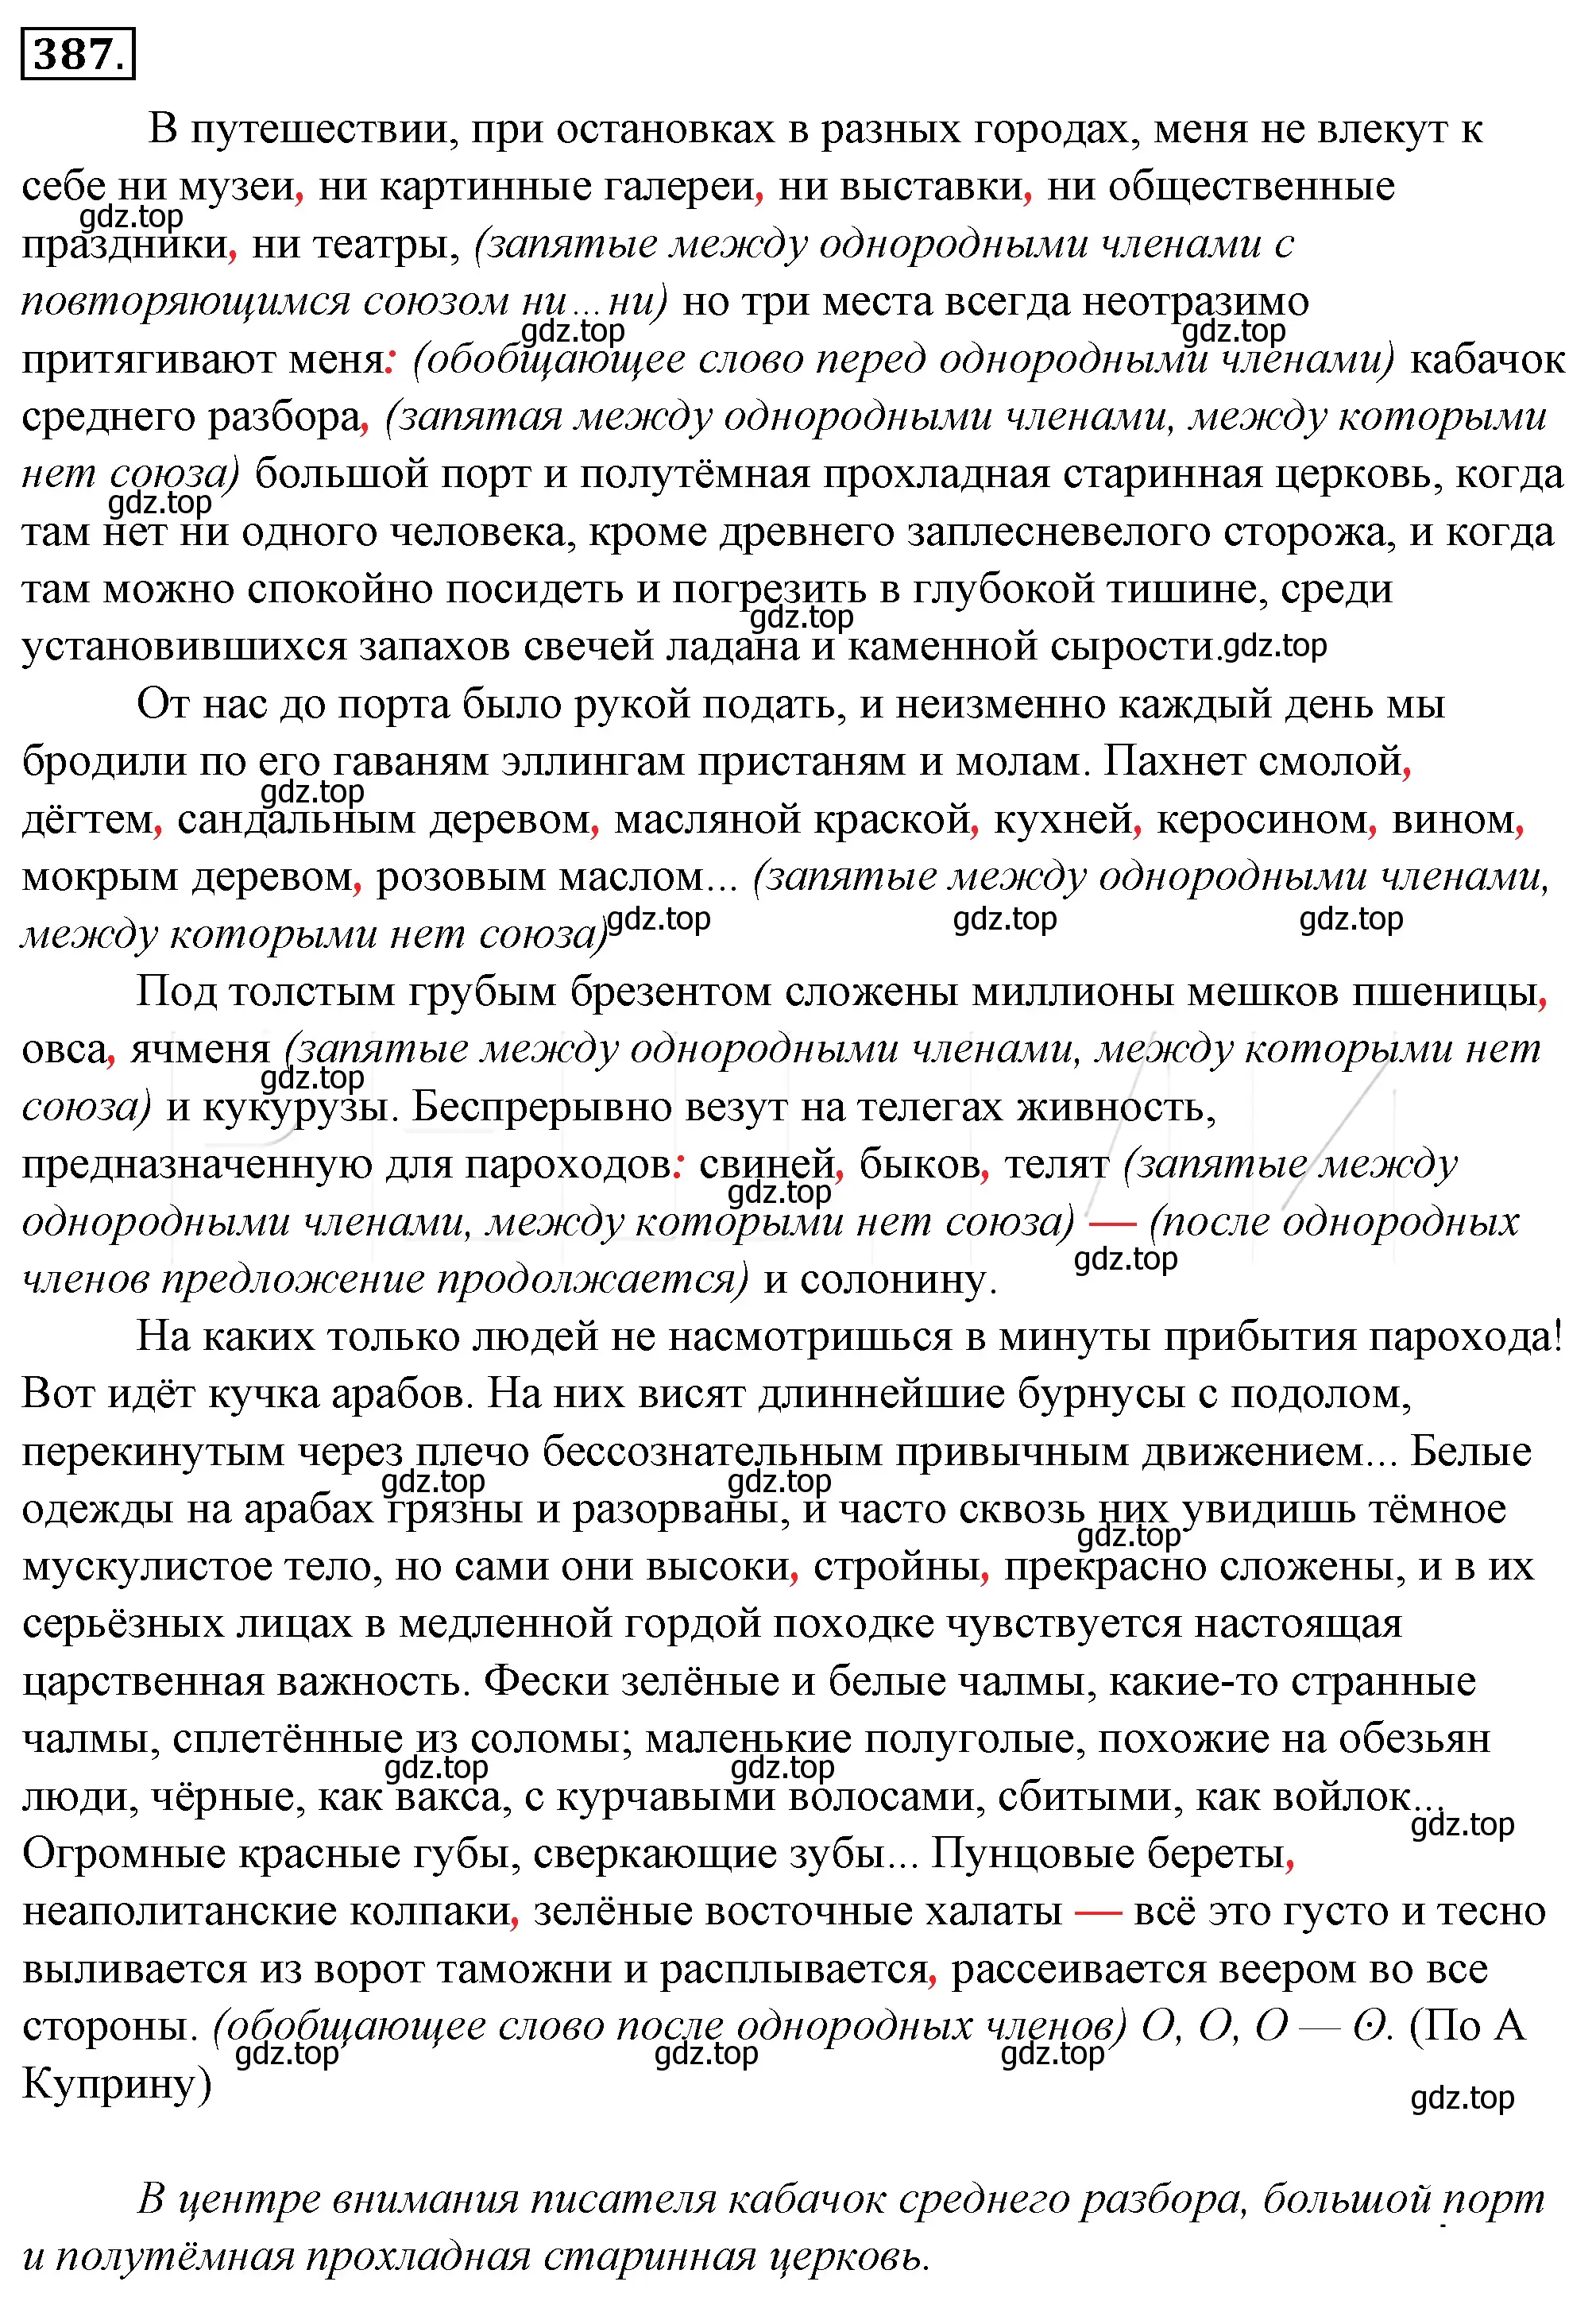 Решение 4. номер 52 (страница 64) гдз по русскому языку 10-11 класс Гольцова, Шамшин, учебник 2 часть